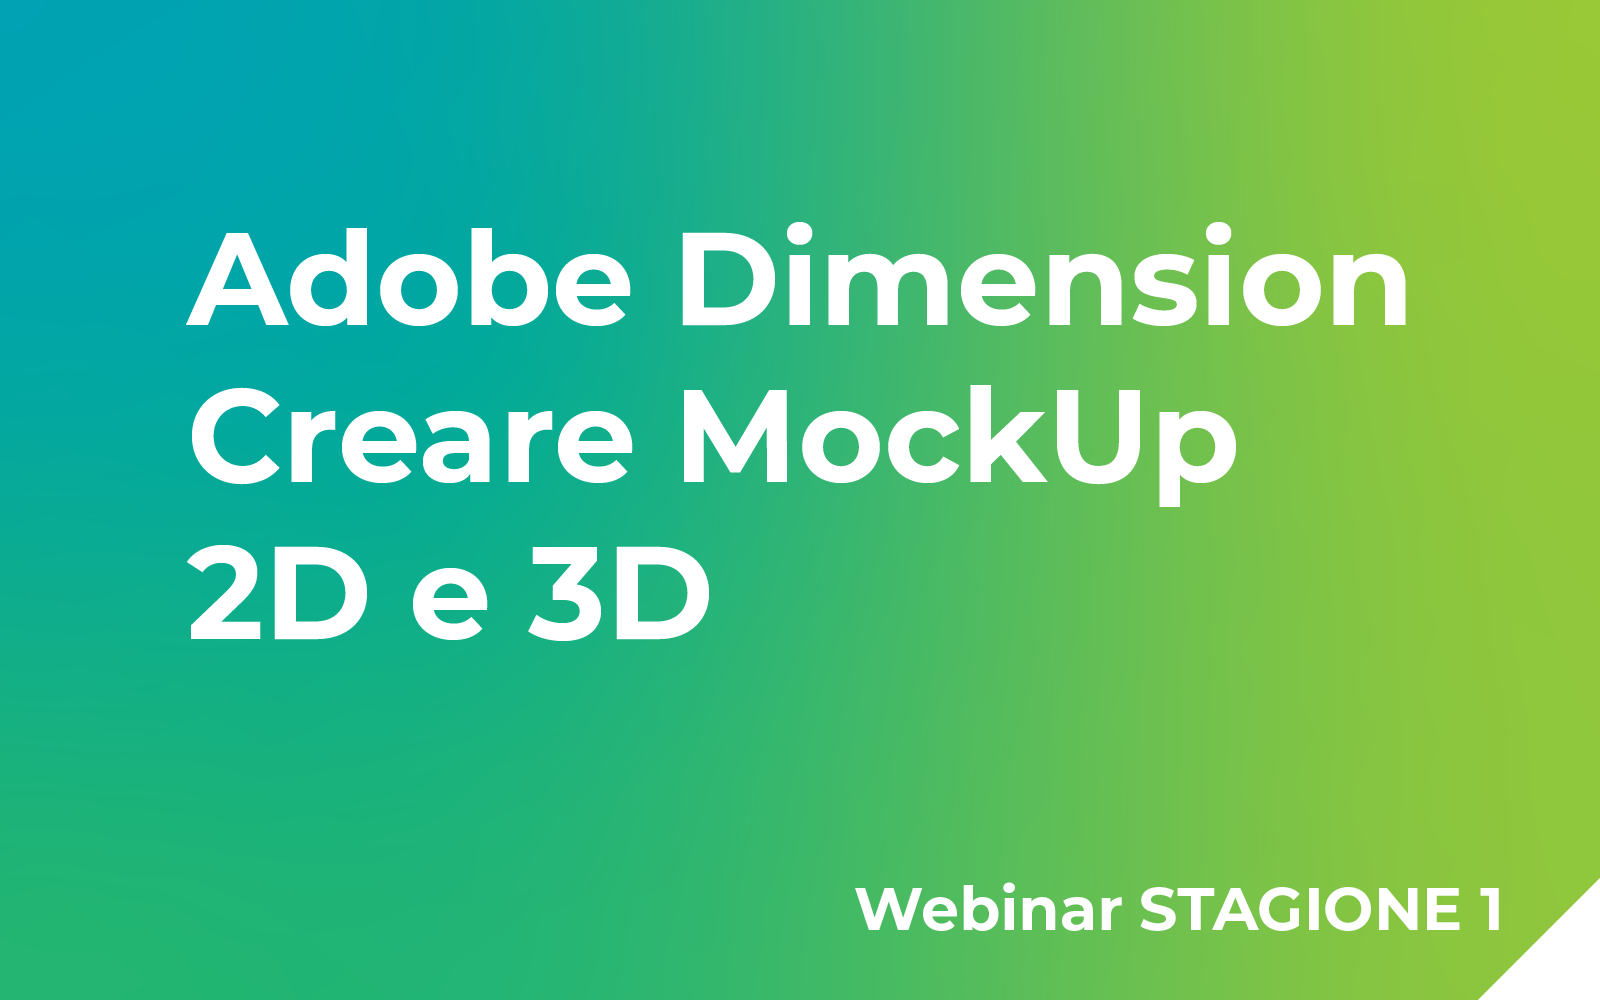 Adobe Dimension: Creare MockUp 2D e 3D